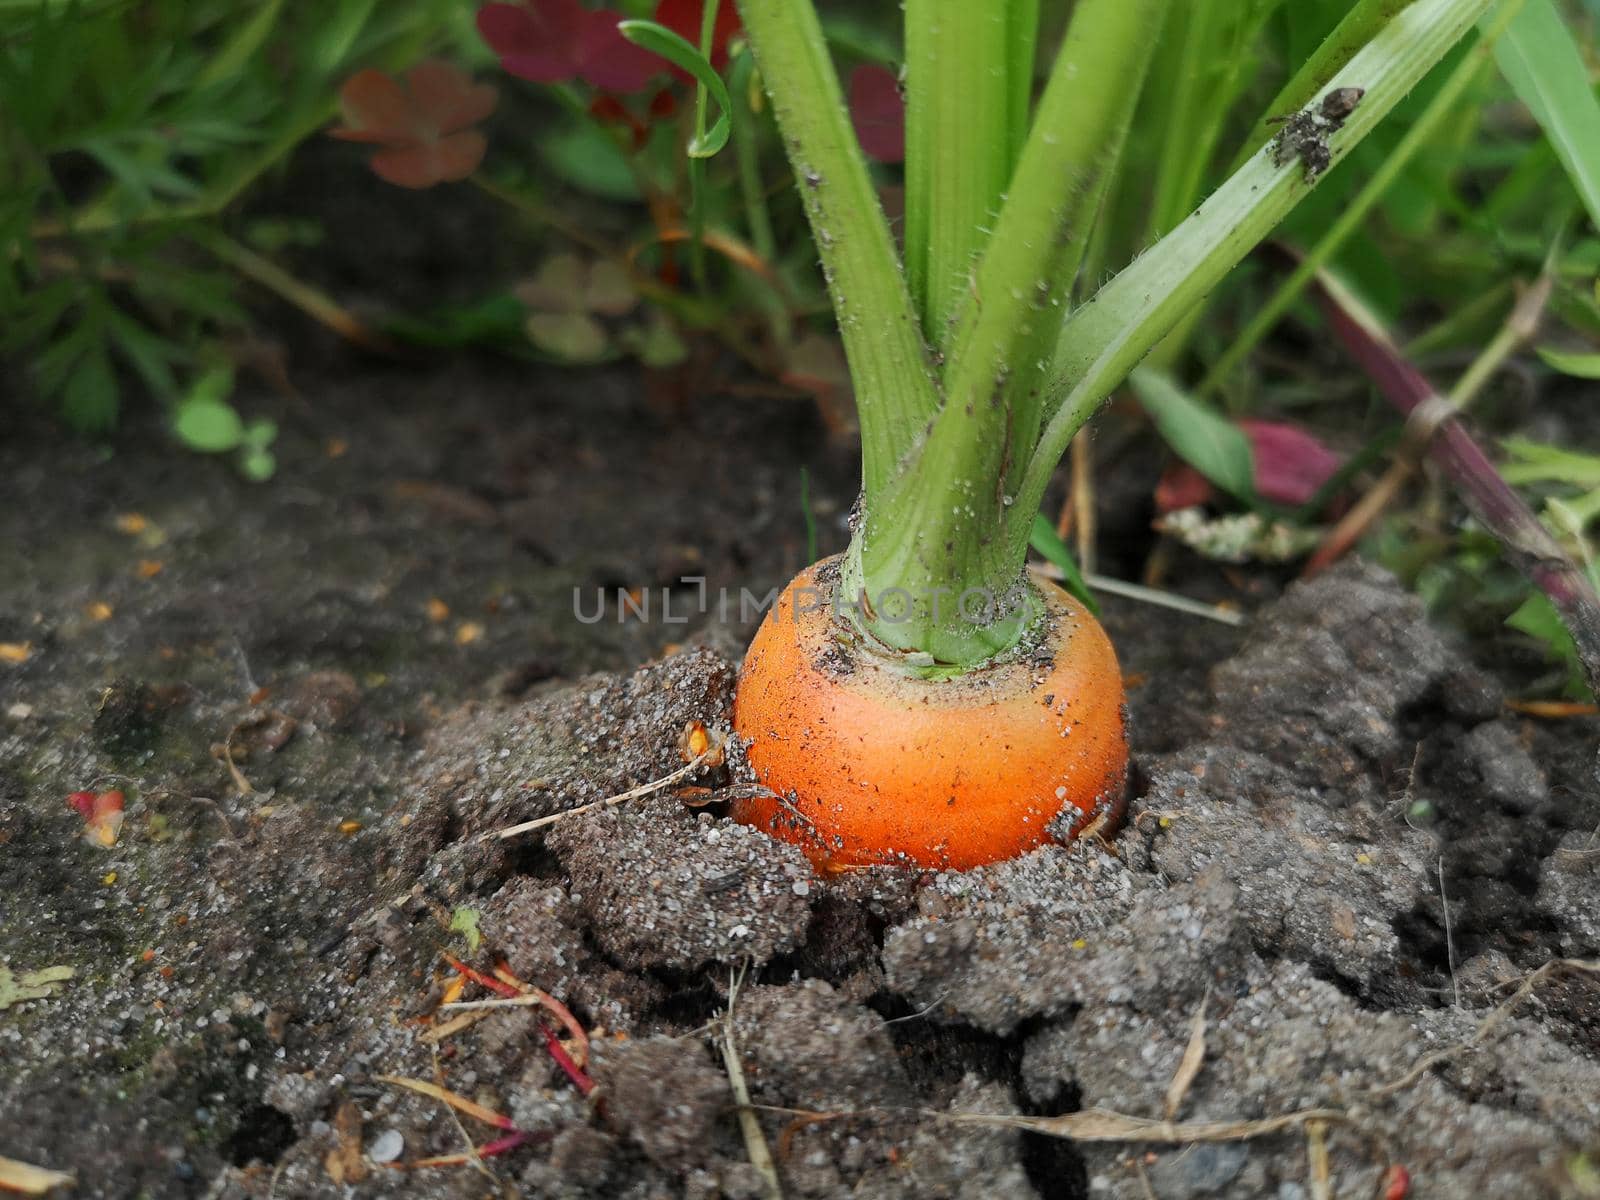 Carrot in the garden, organic farming concept by galinasharapova